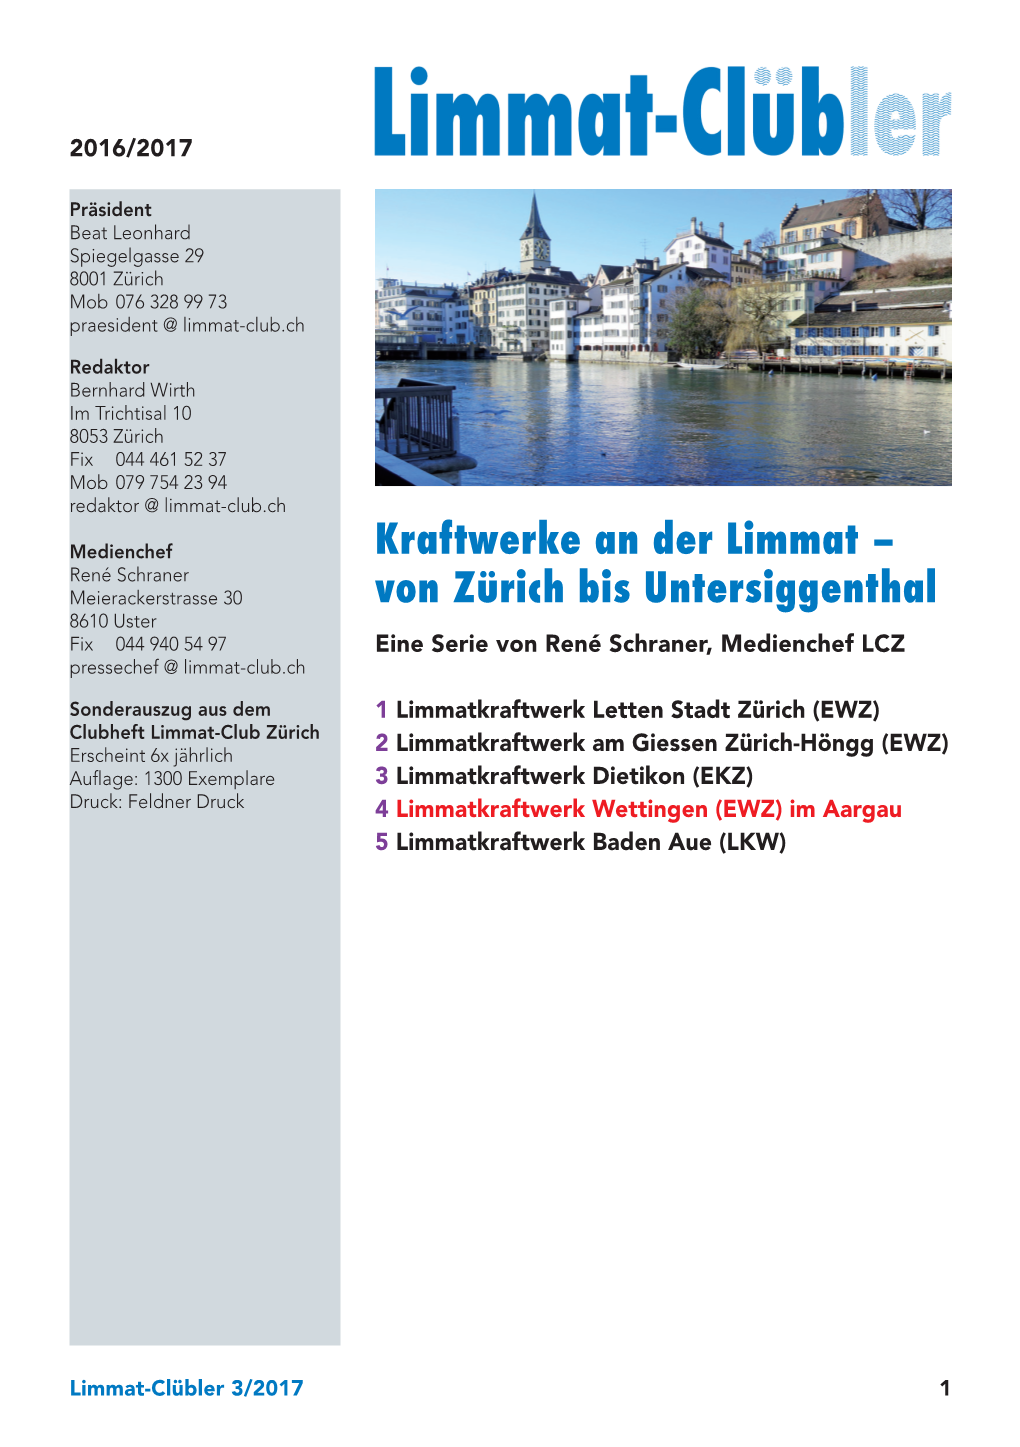 Kraftwerke an Der Limmat – Von Zürich Bis Untersiggenthal 4 Das Limmatkraftwerk Wettingen (EWZ) Im Aargau Das Grösste Und Stärkste Kraftwerk an Der Limmat